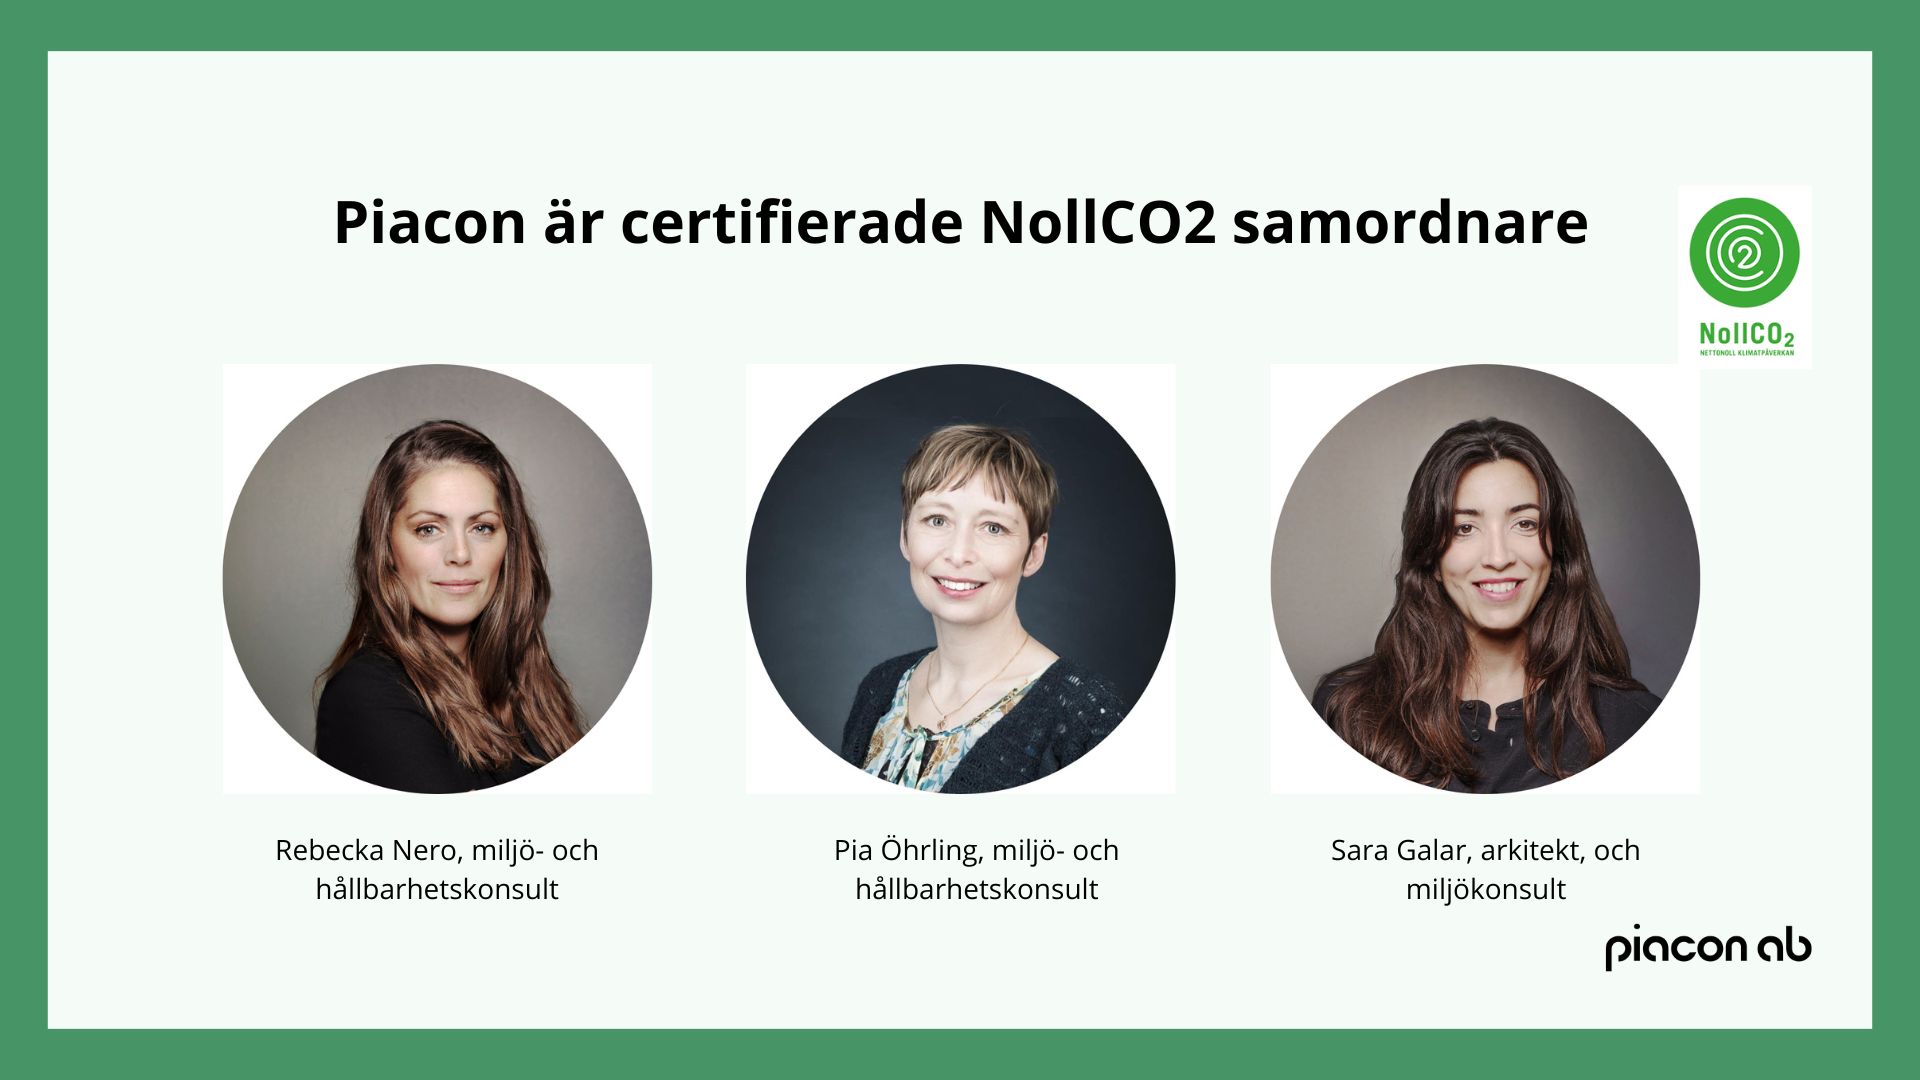 Piacon AB är certifiering av NollCo2!